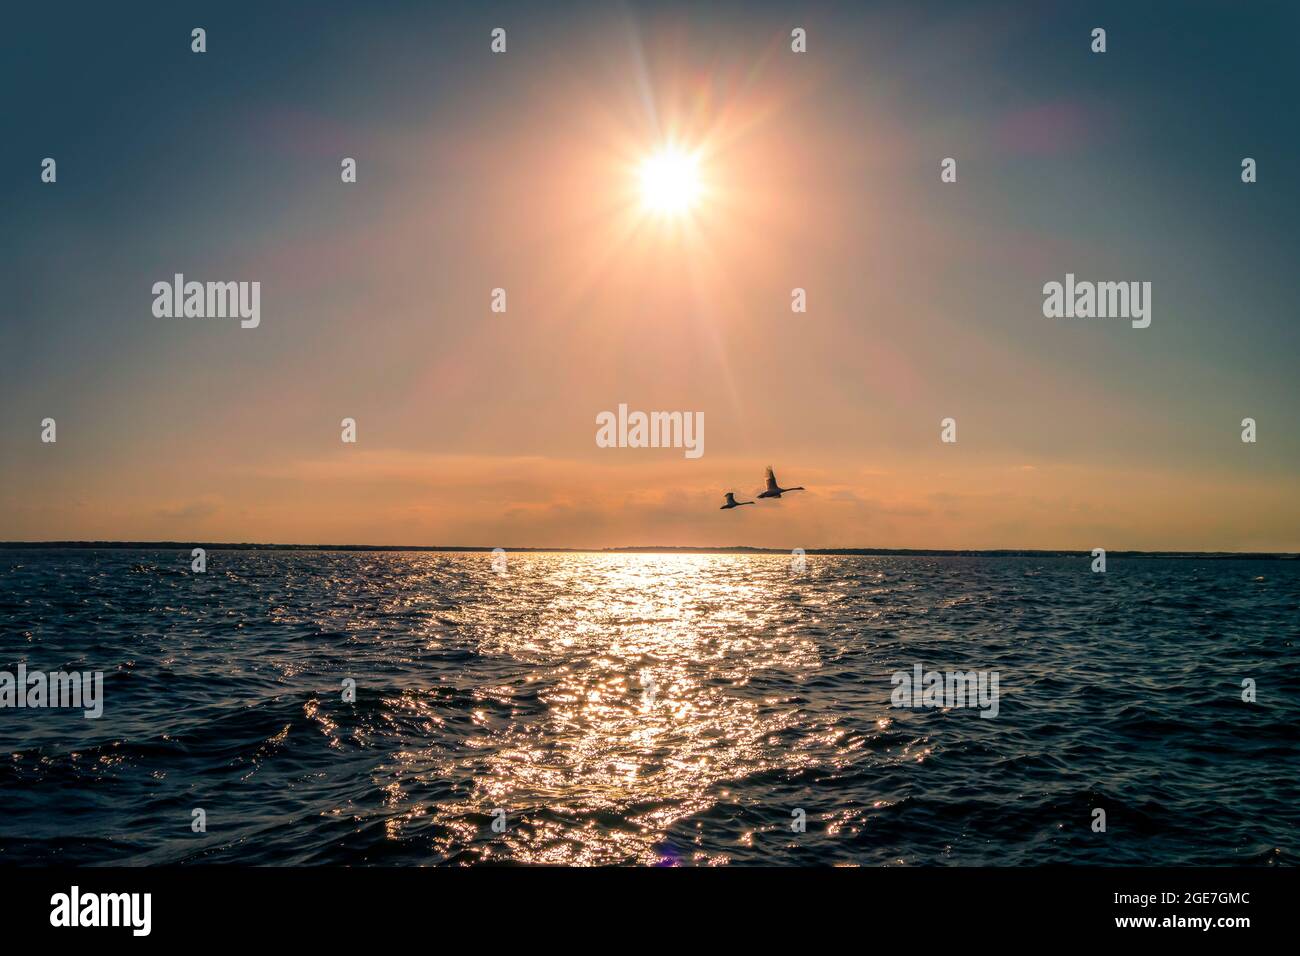 deux silhouettes d'oies volantes au-dessus des eaux de l'océan et ciel ensoleillé Banque D'Images